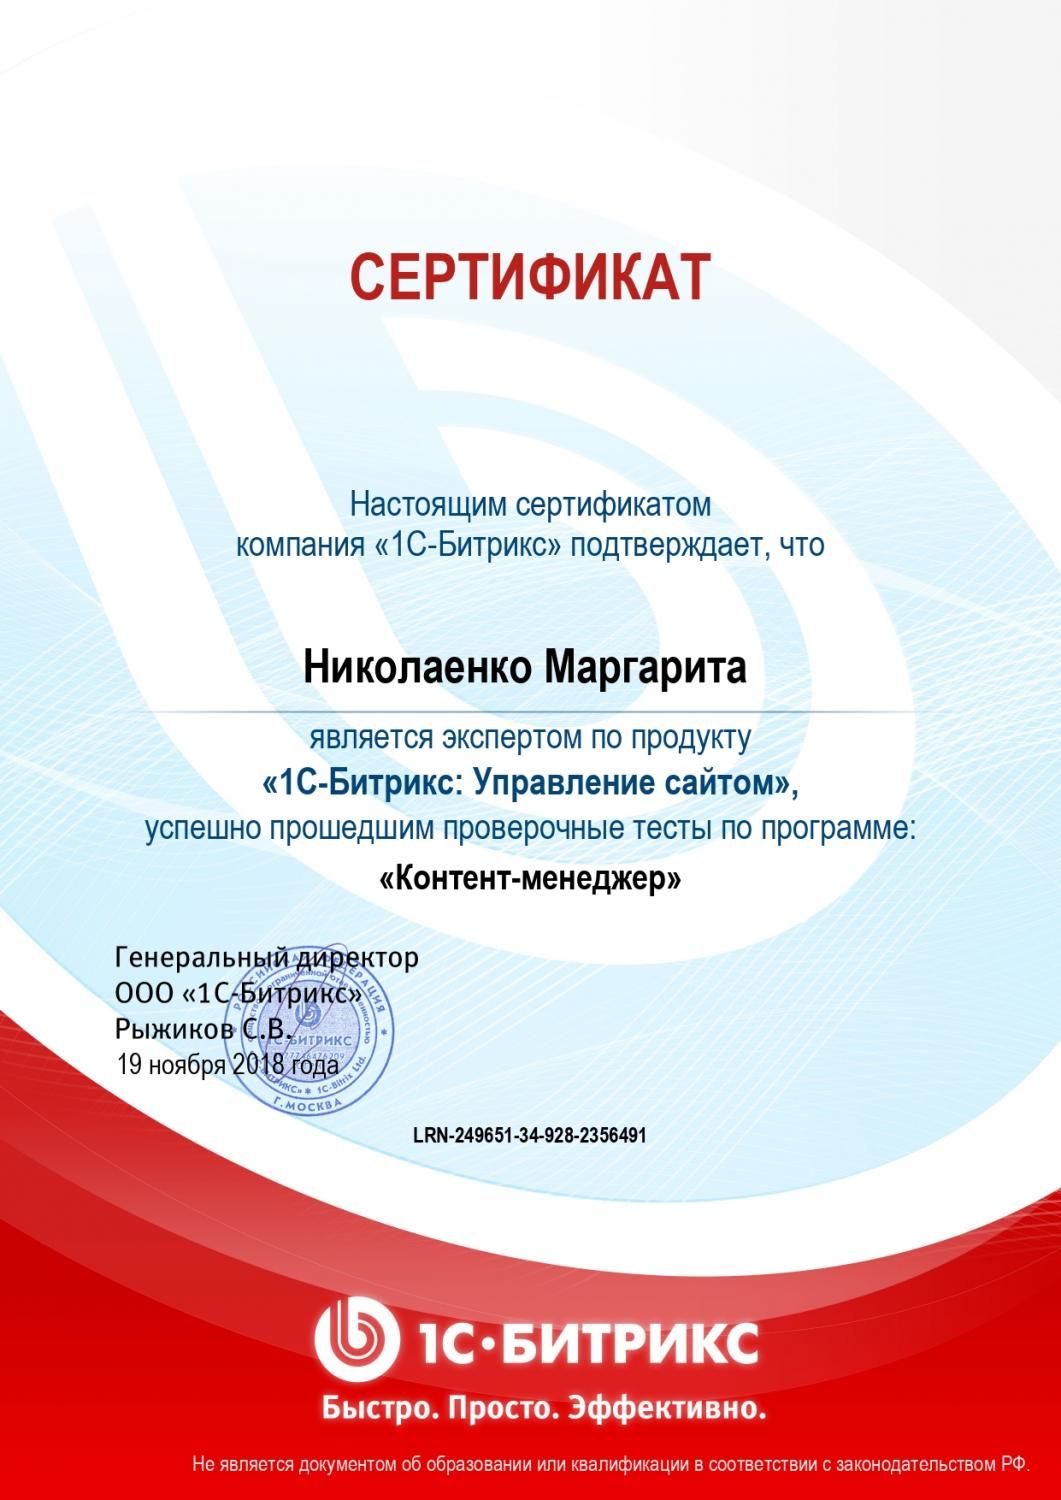 Сертификат эксперта по программе "Контент-менеджер" - Николаенко М. в Владивостока